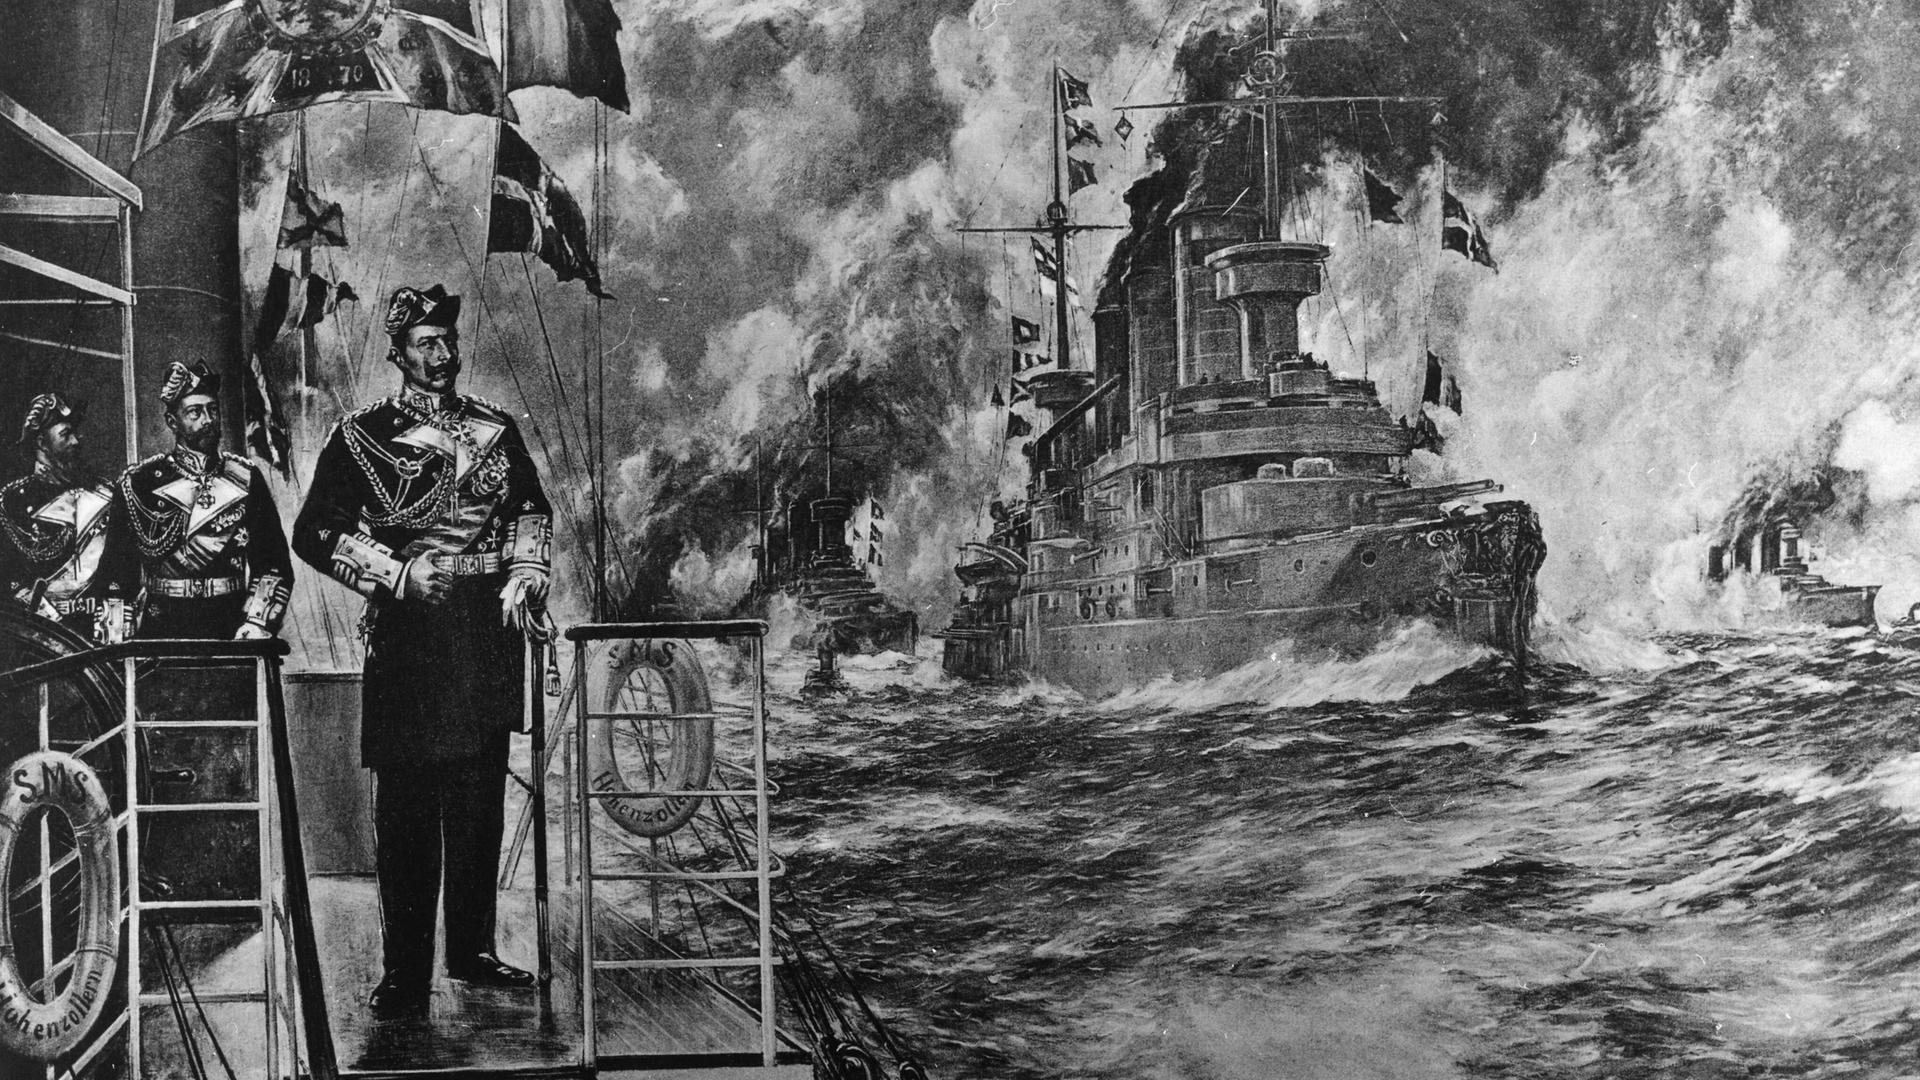 Das Wandgemälde "Kaiser Wilhelm und seine Flotte" von 1906 zeigt den deutschen Kaiser Wilhelm II., Prinz Heinrich und Großadmiral Alfred von Tirpitz. 